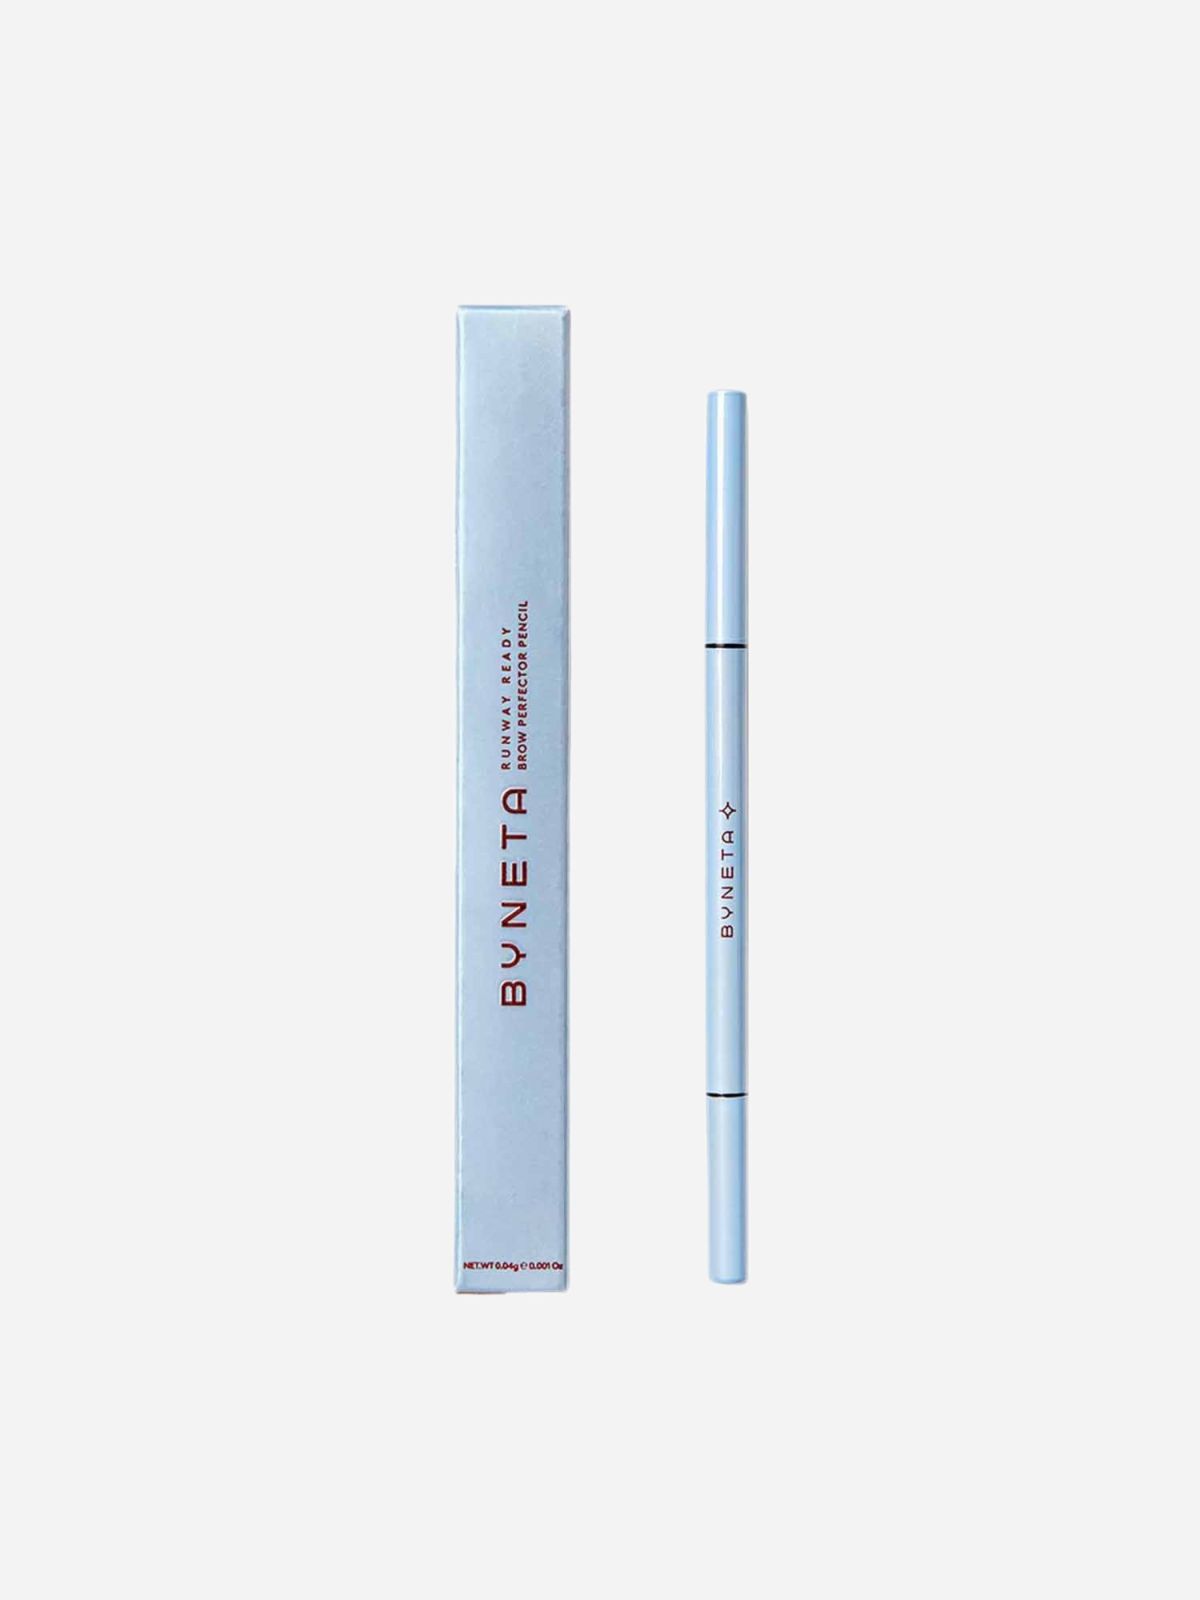  עיפרון גבות בלונד BYNETA-RUNWAY READY-Blonde brow Perfector pencil של BYNETA